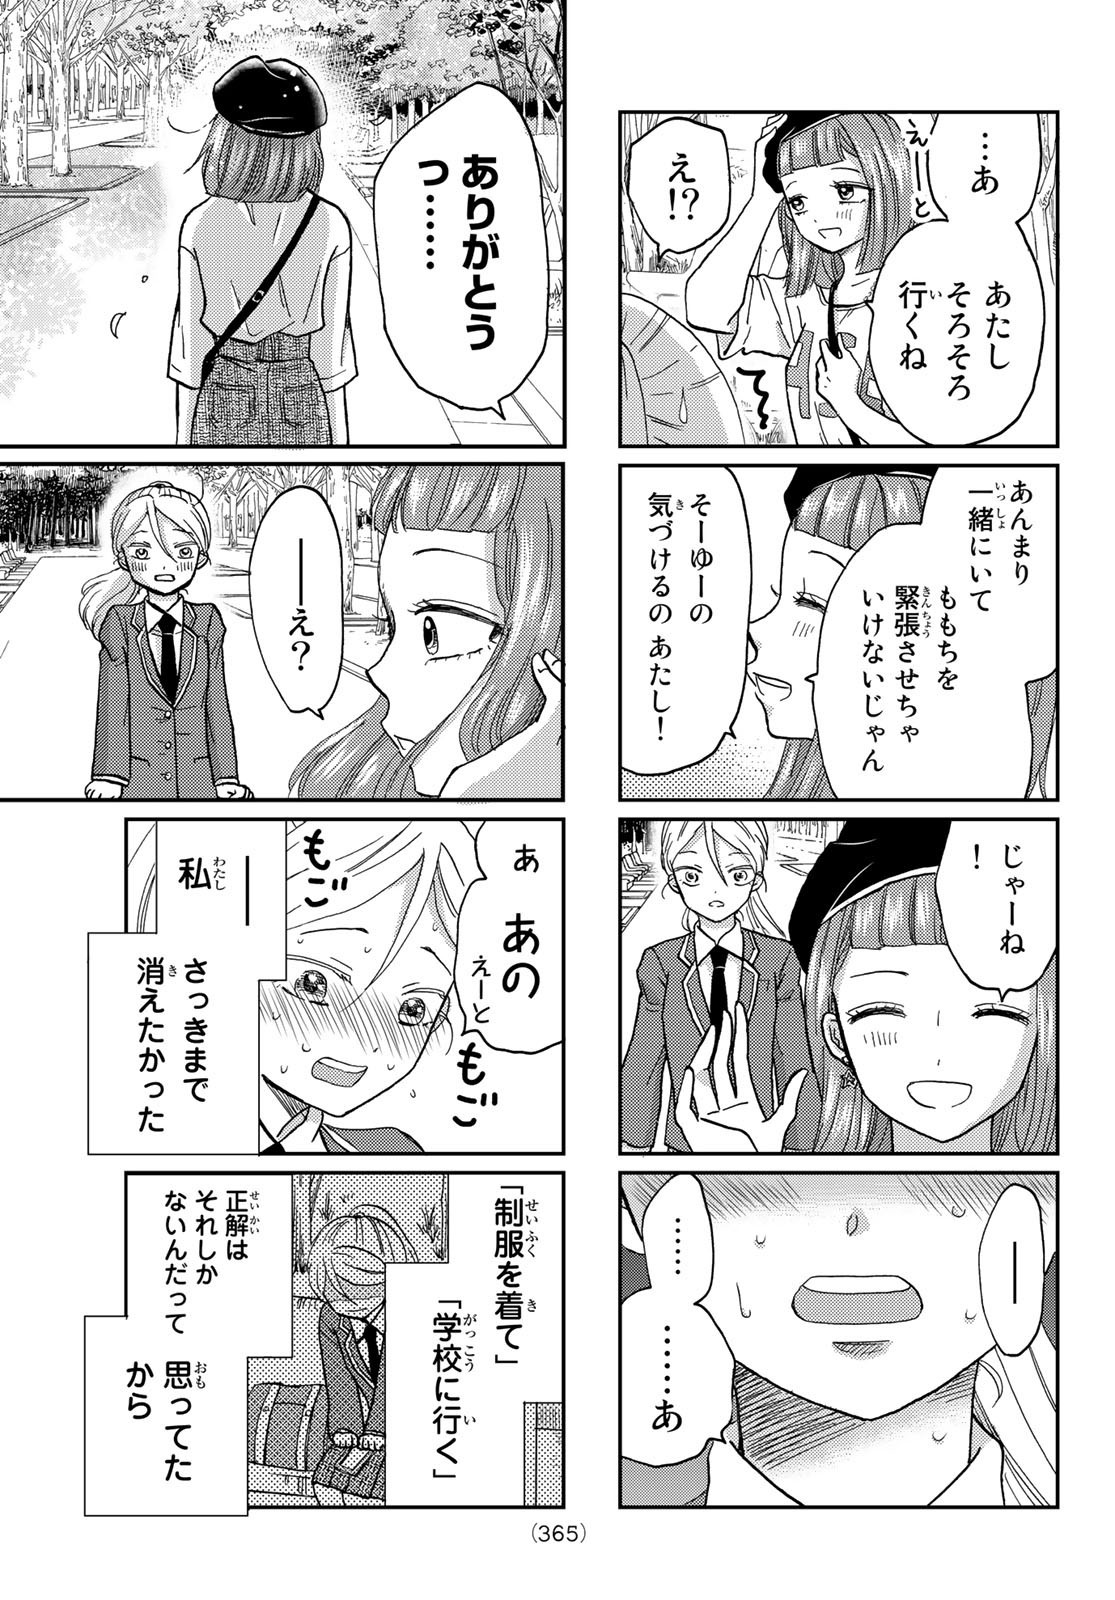 Hinata-san, Hoshino desu. - Chapter 018 - Page 7